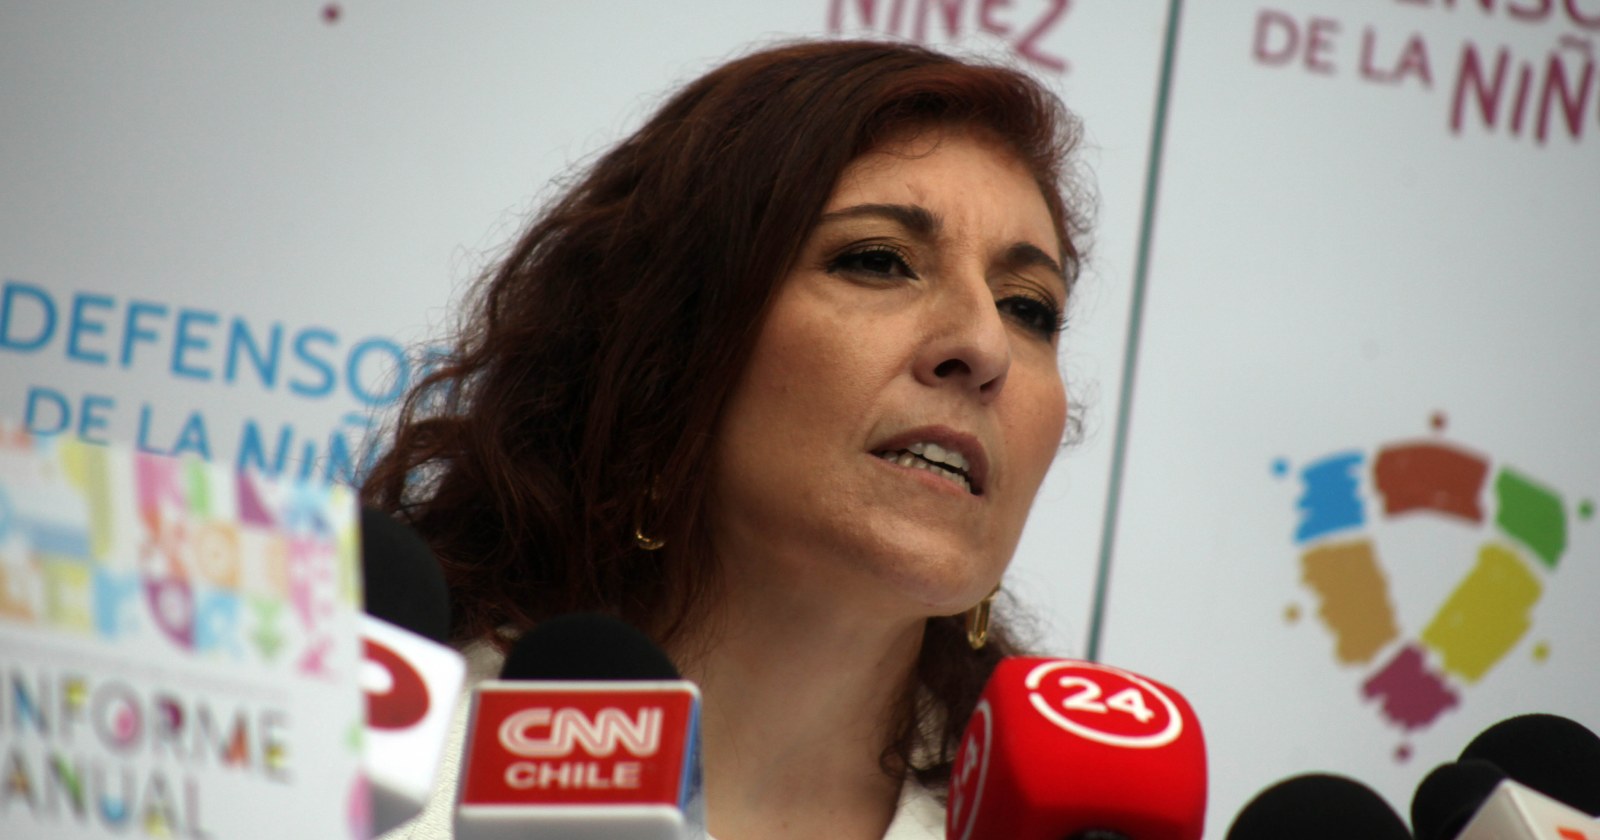 Patricia Muñoz Defensoría de la Niñez